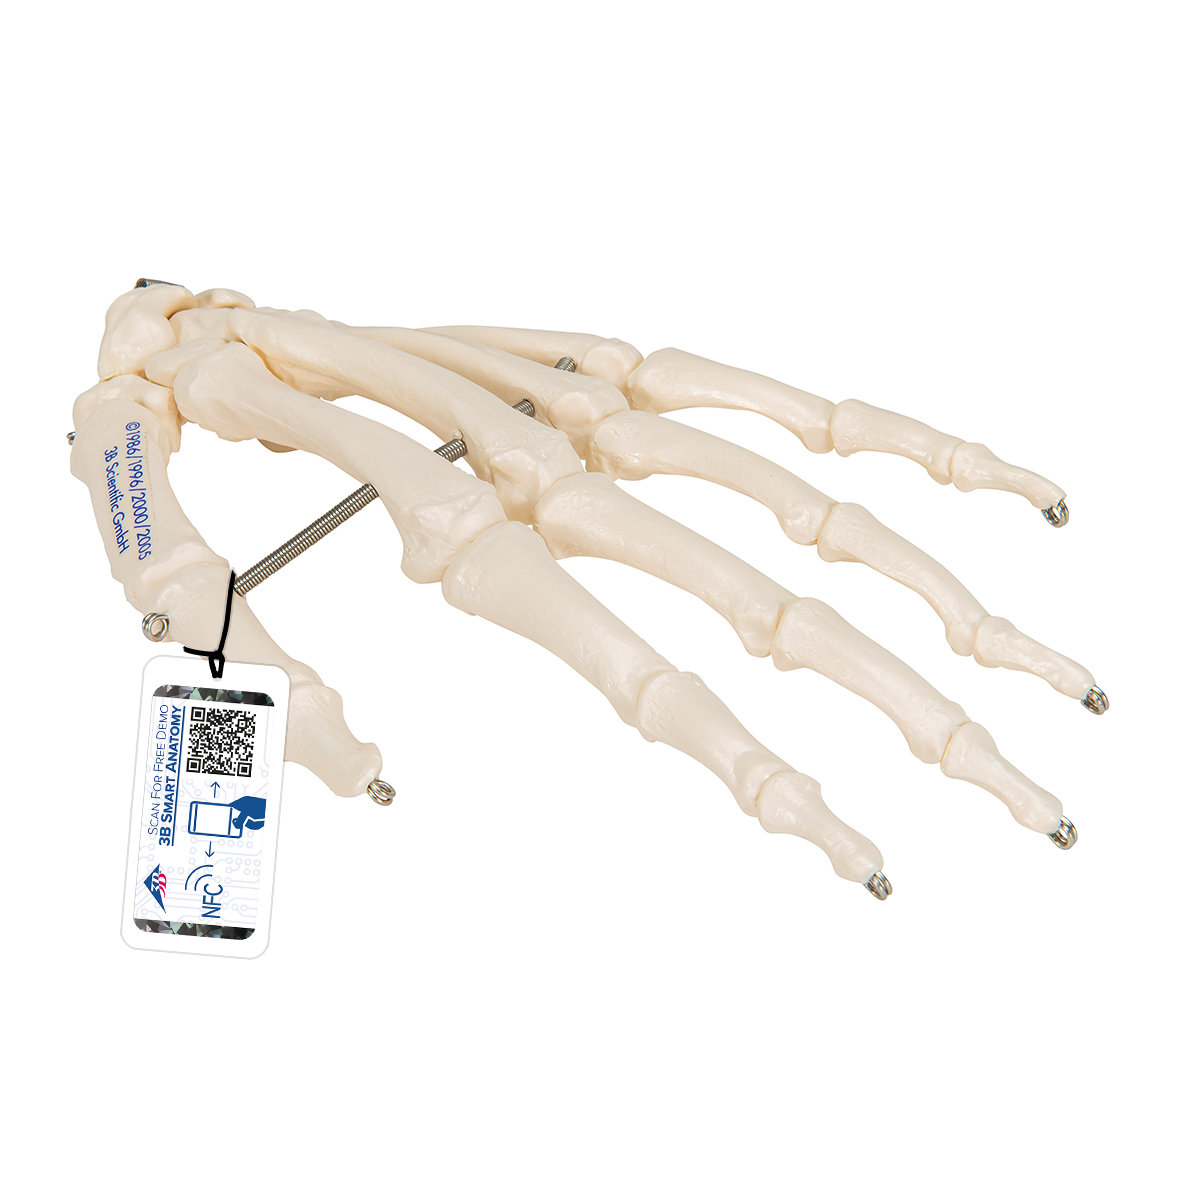 Handskelett Modell, auf Draht gezogen - 3B Smart Anatomy, Bestellnummer 1019367, A40, 3B Scientific